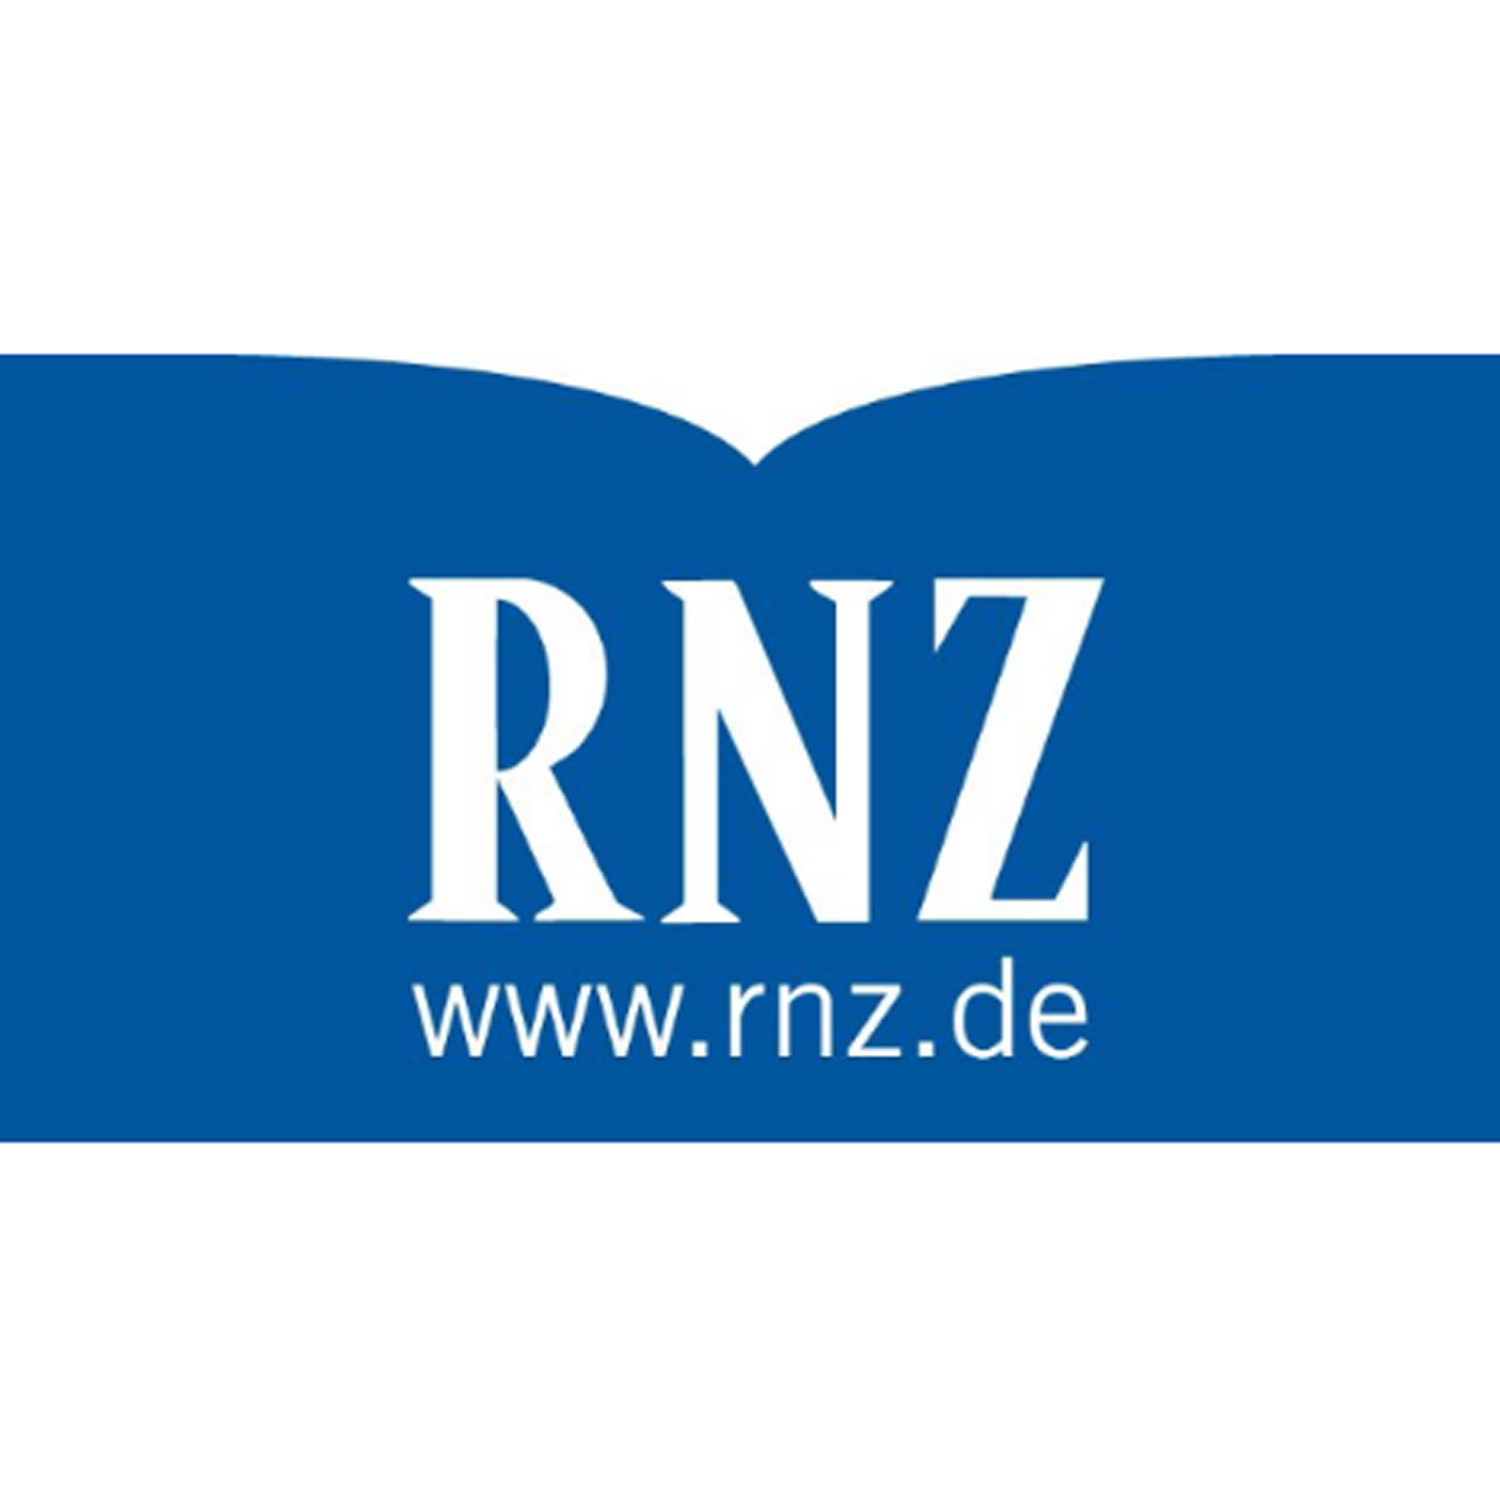 www.rnz.de